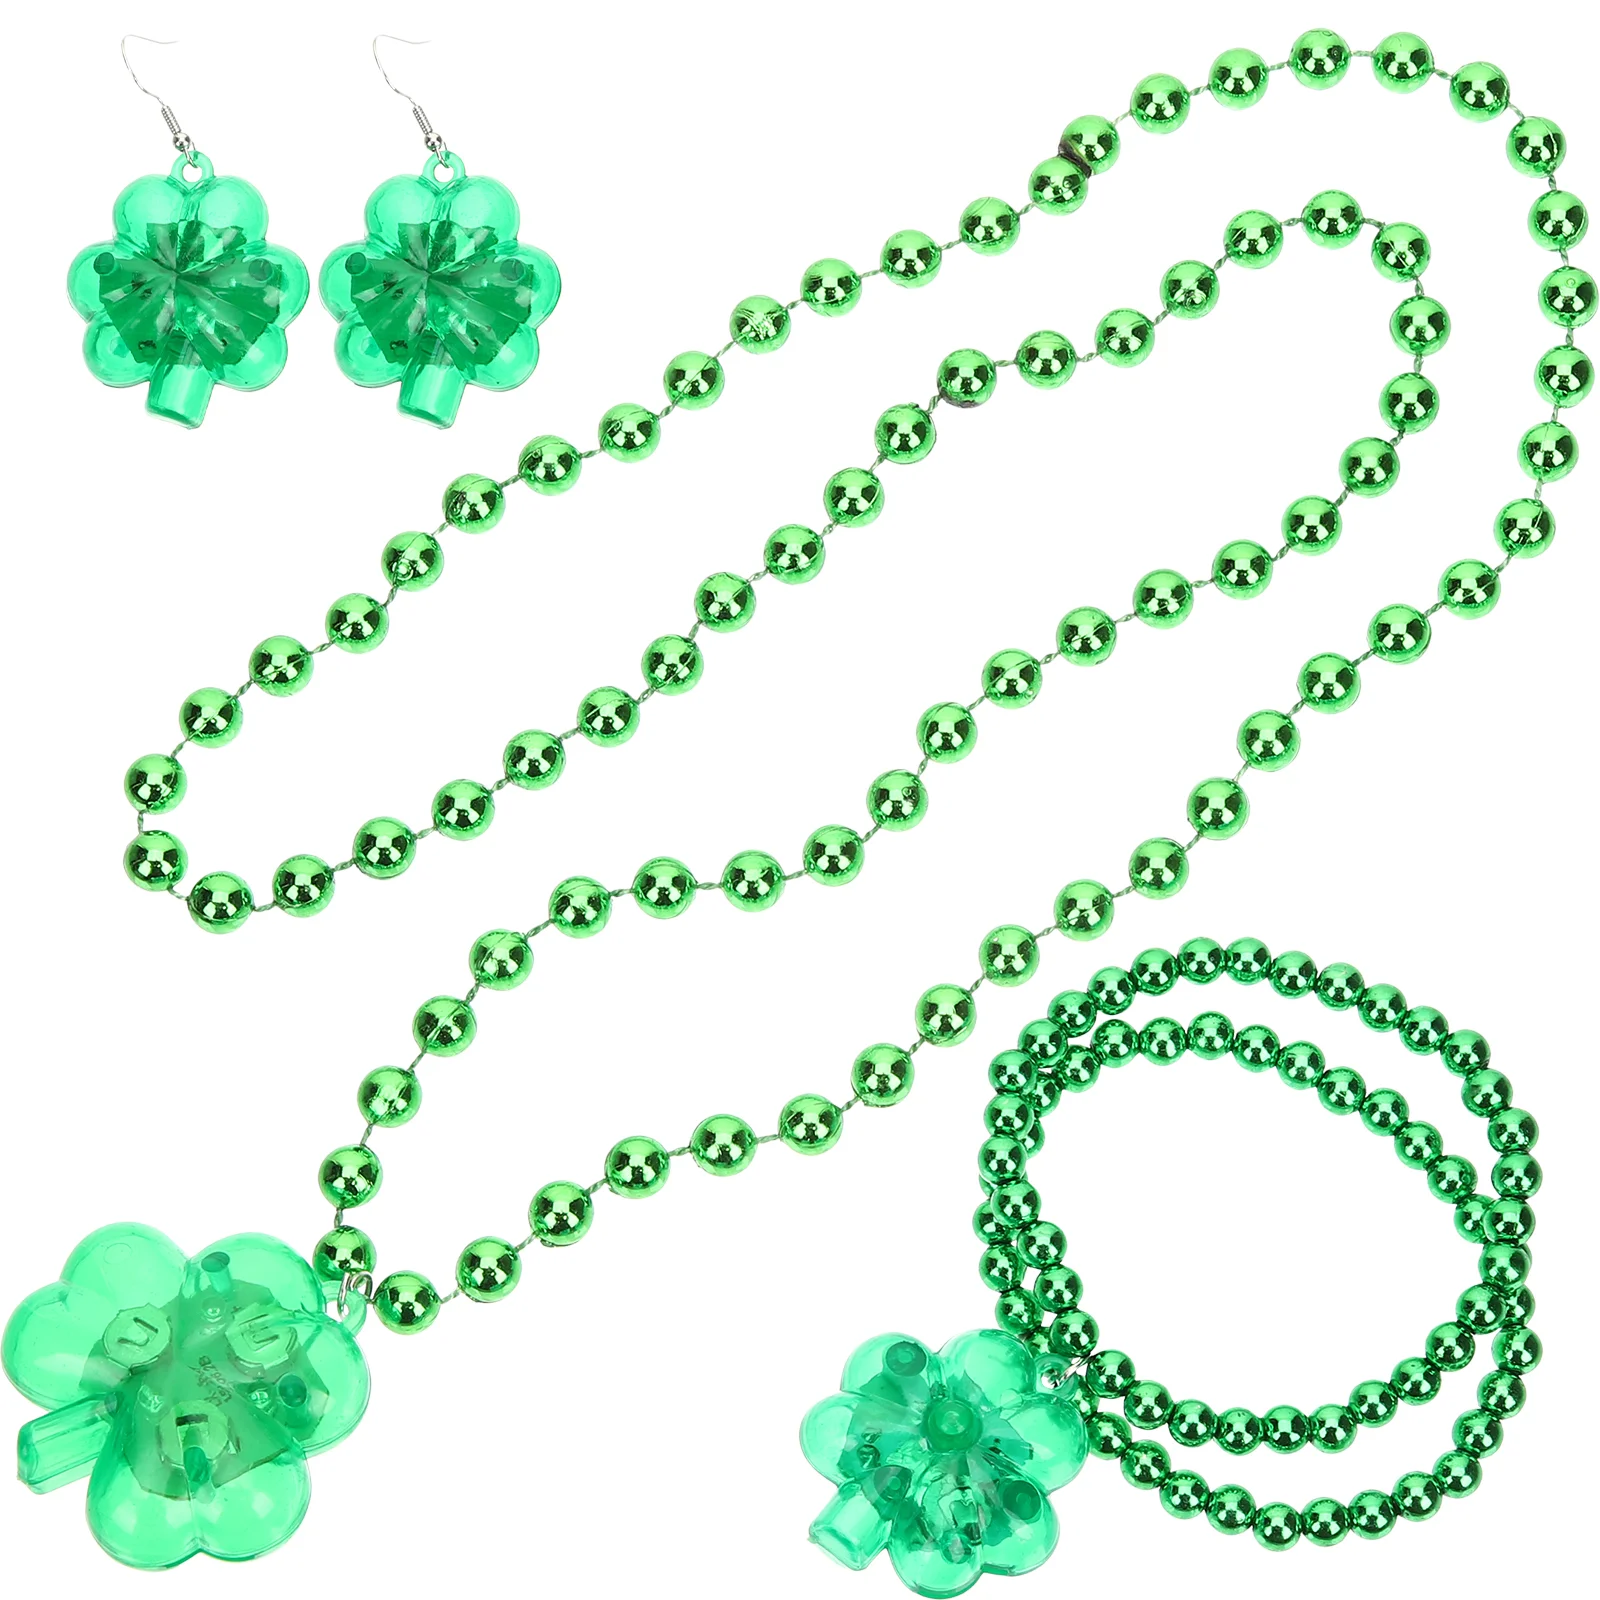 

Necklace Day St S Patrick Shamrock Patricks Festive Bracelet Up Costume Leprechaun Gifts Green Lucky Decor Women Leaf Costumes